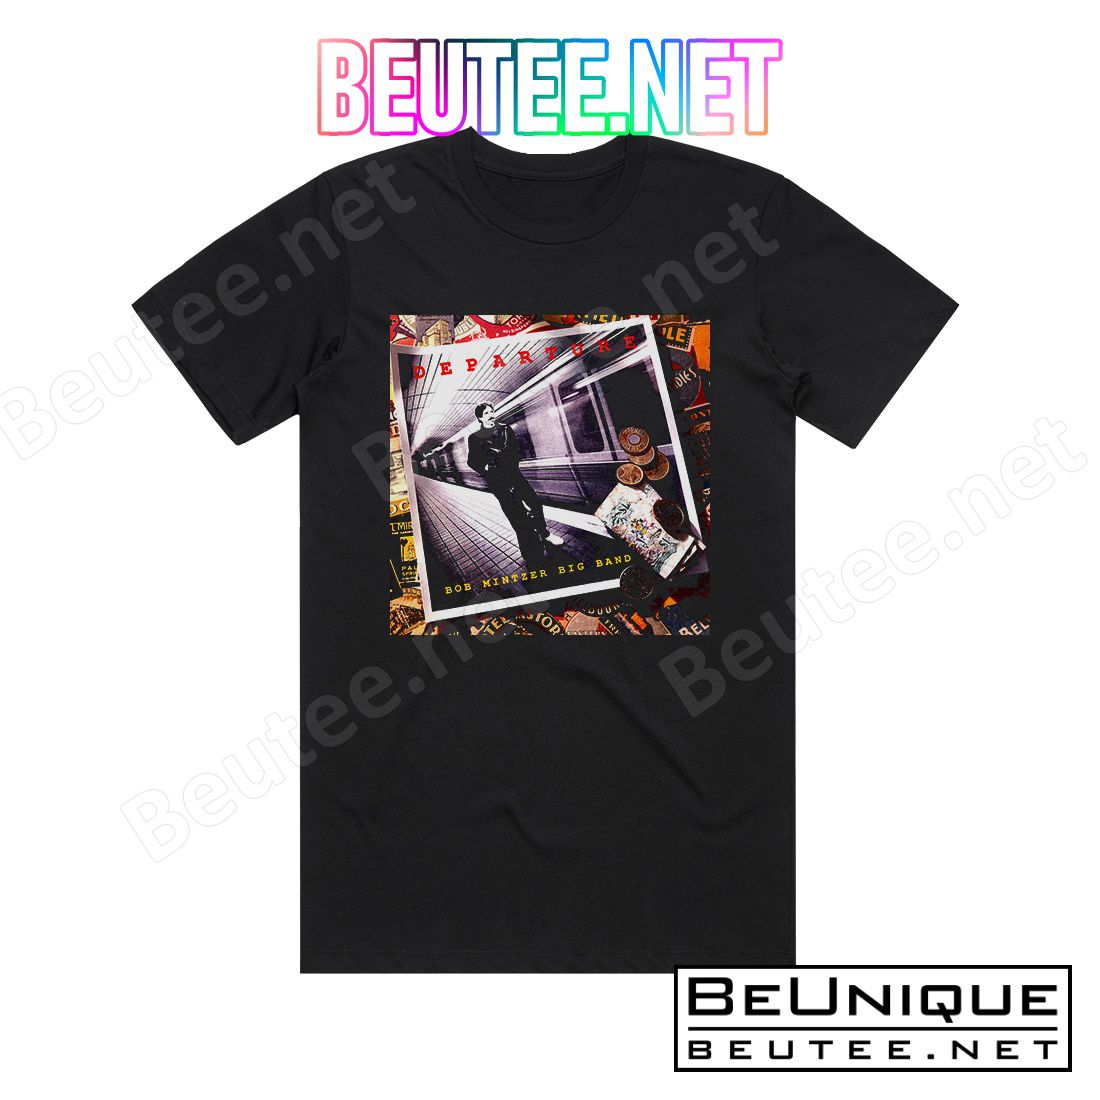 Bob Mintzer Big Band Departure Album Cover T-Shirt